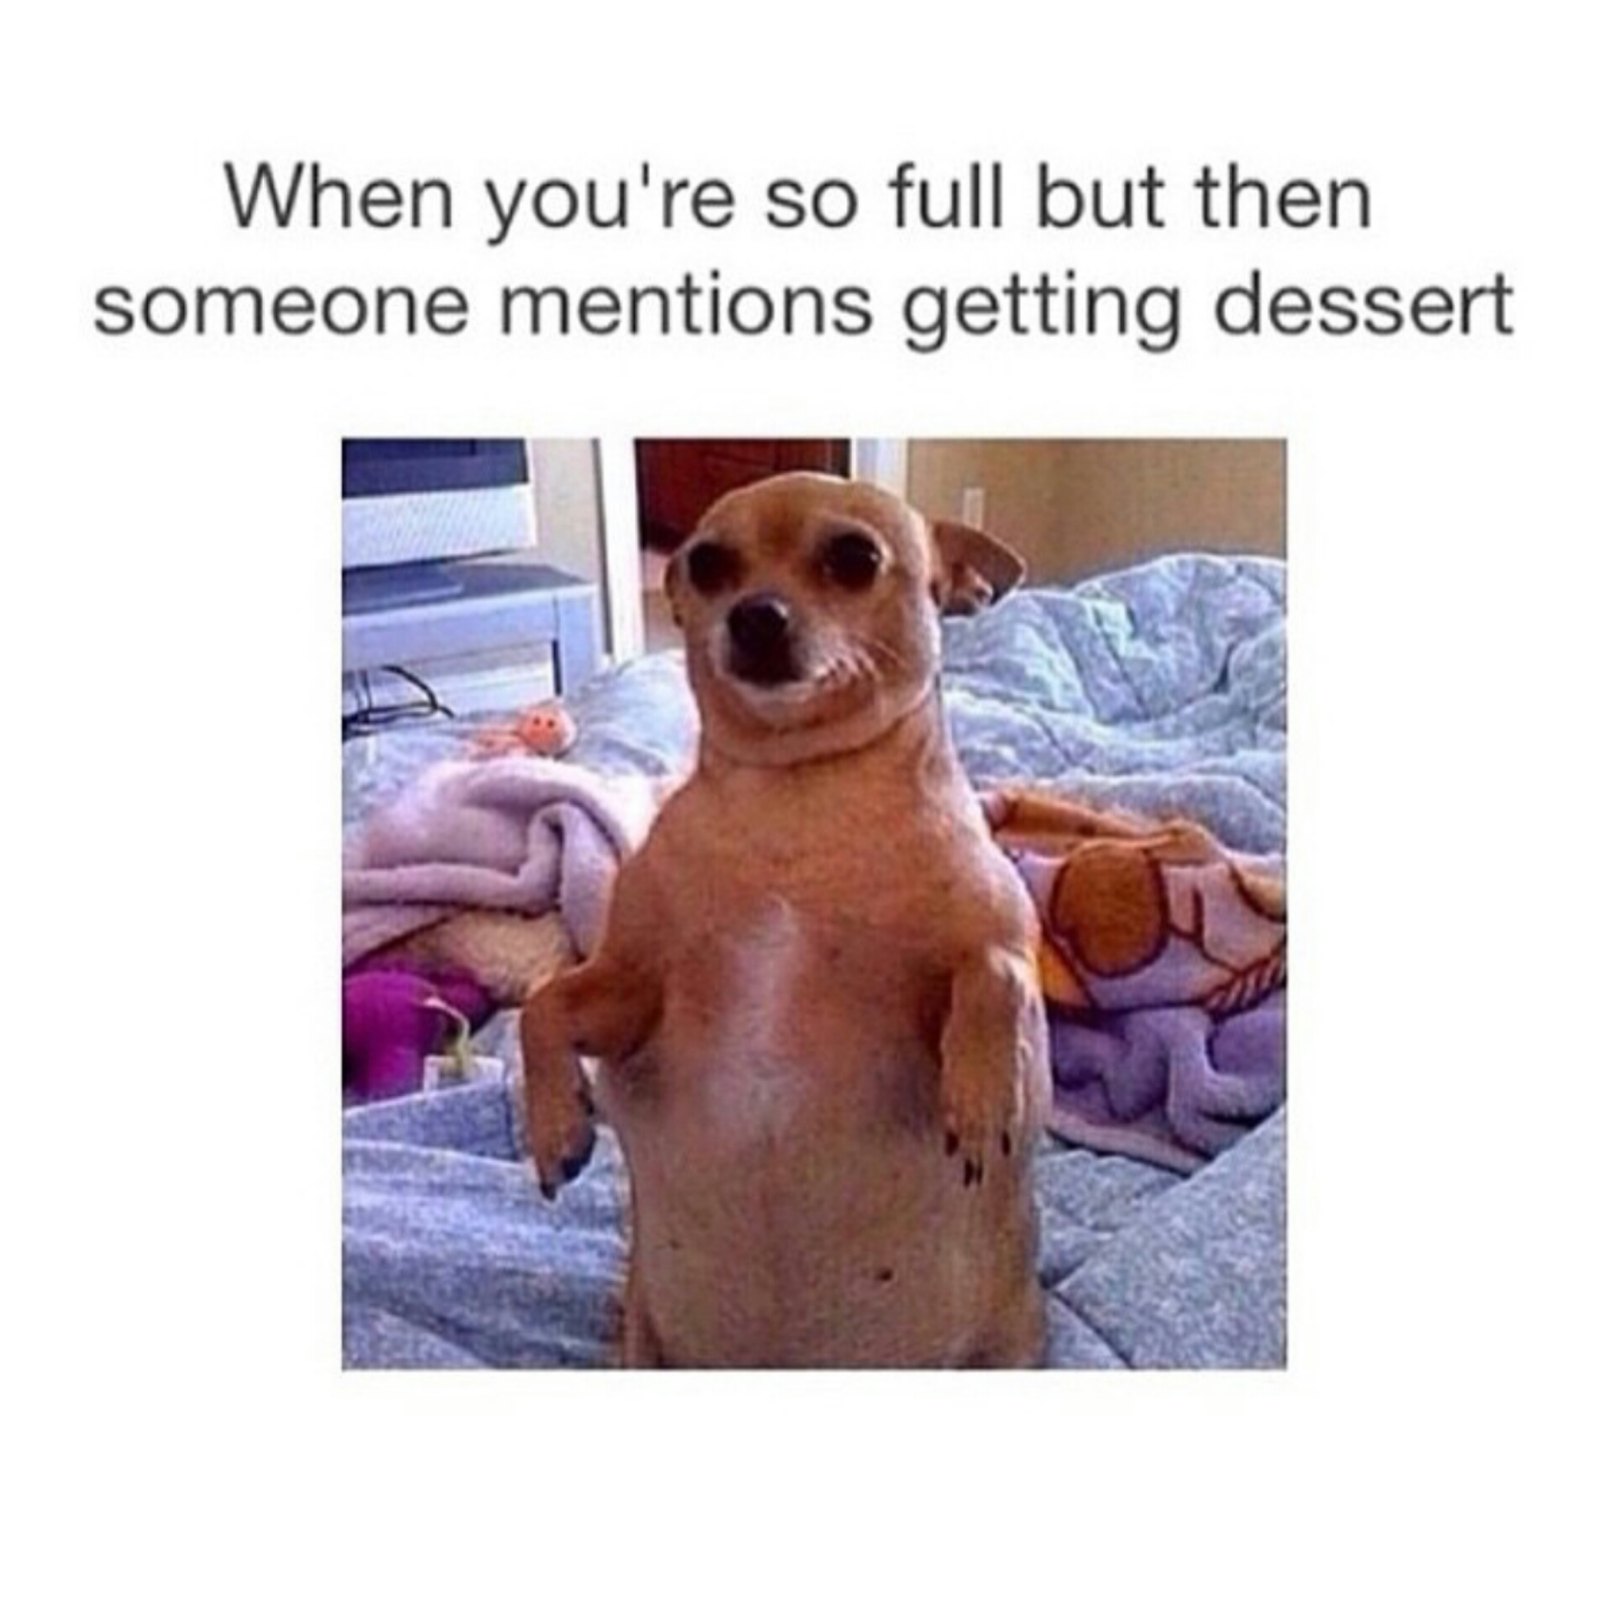 always room for dessert - meme